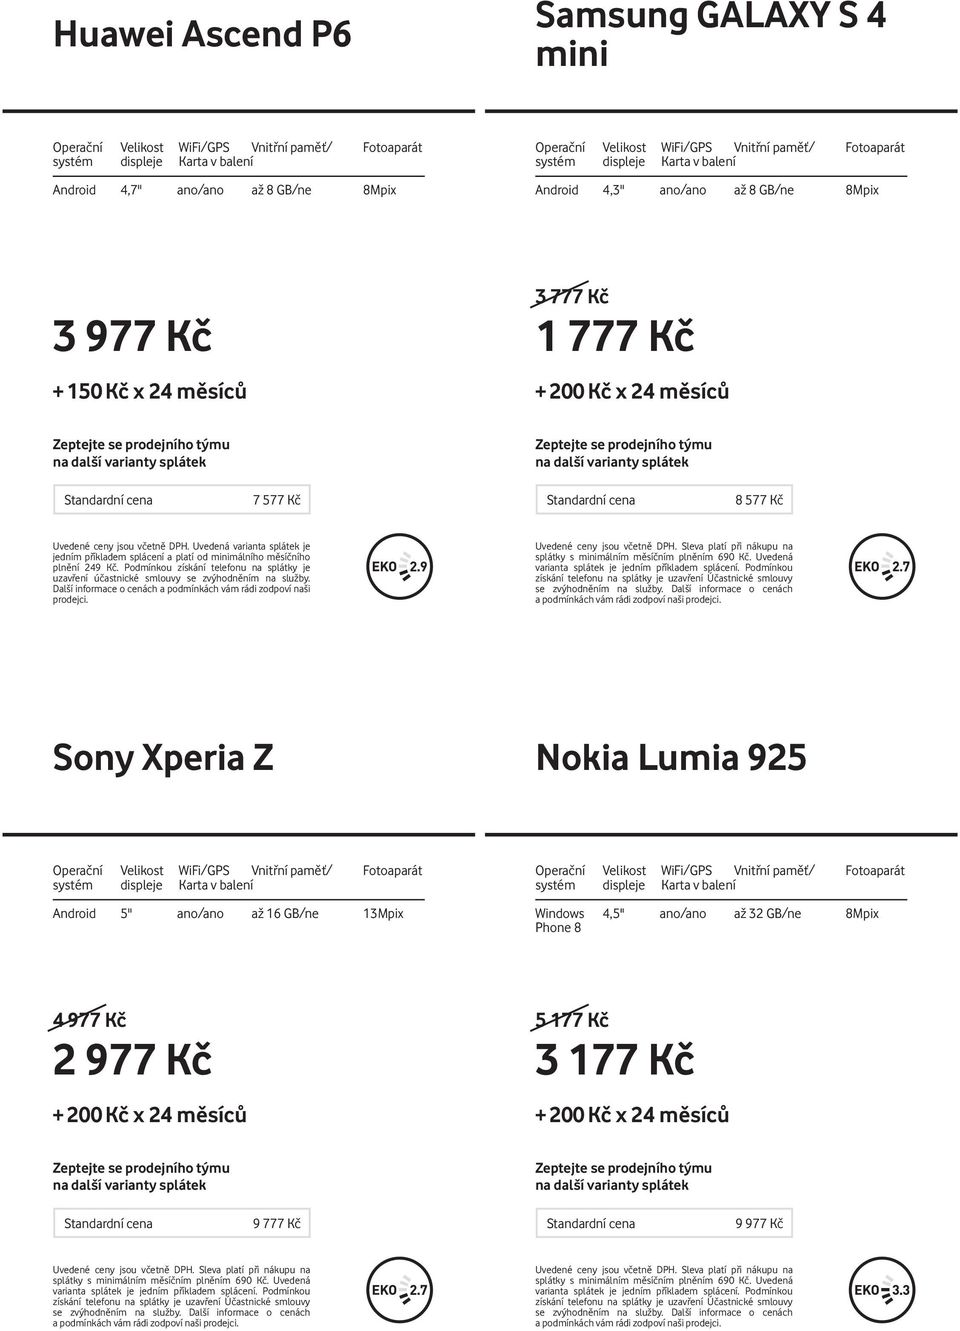 Nokia Lumia 925 Android 5'' ano/ano až 16 GB/ne 13Mpix Windows 4,5" ano/ano až 32 GB/ne 8Mpix Phone 8 4 9 2 9 + 200